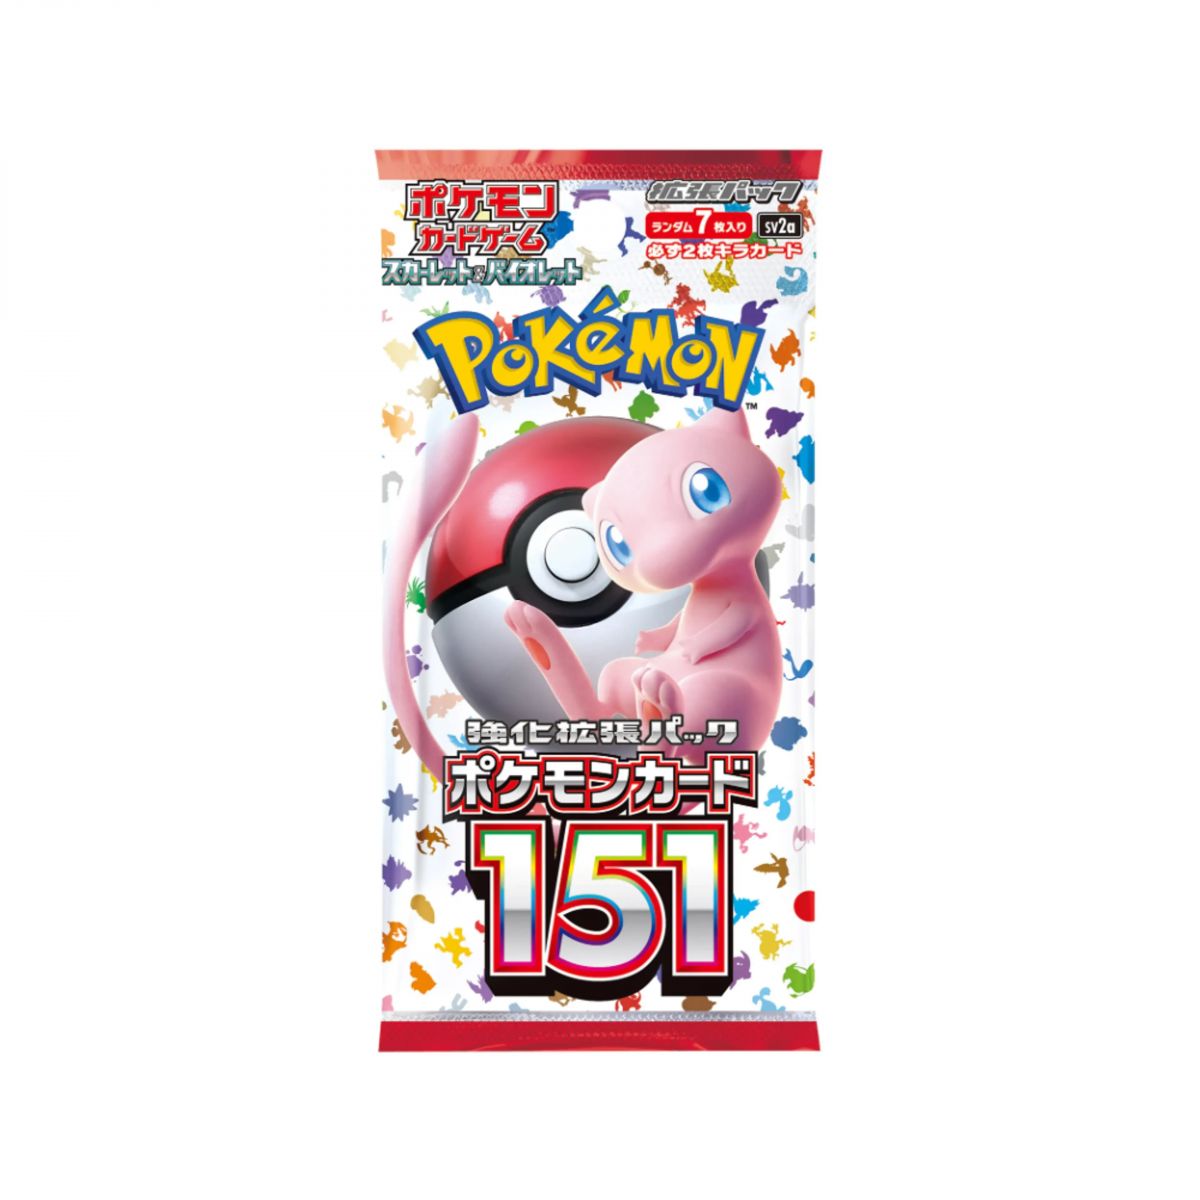 Pokémon - Boosters - Pokémon Card 151 [SV2A] - JP